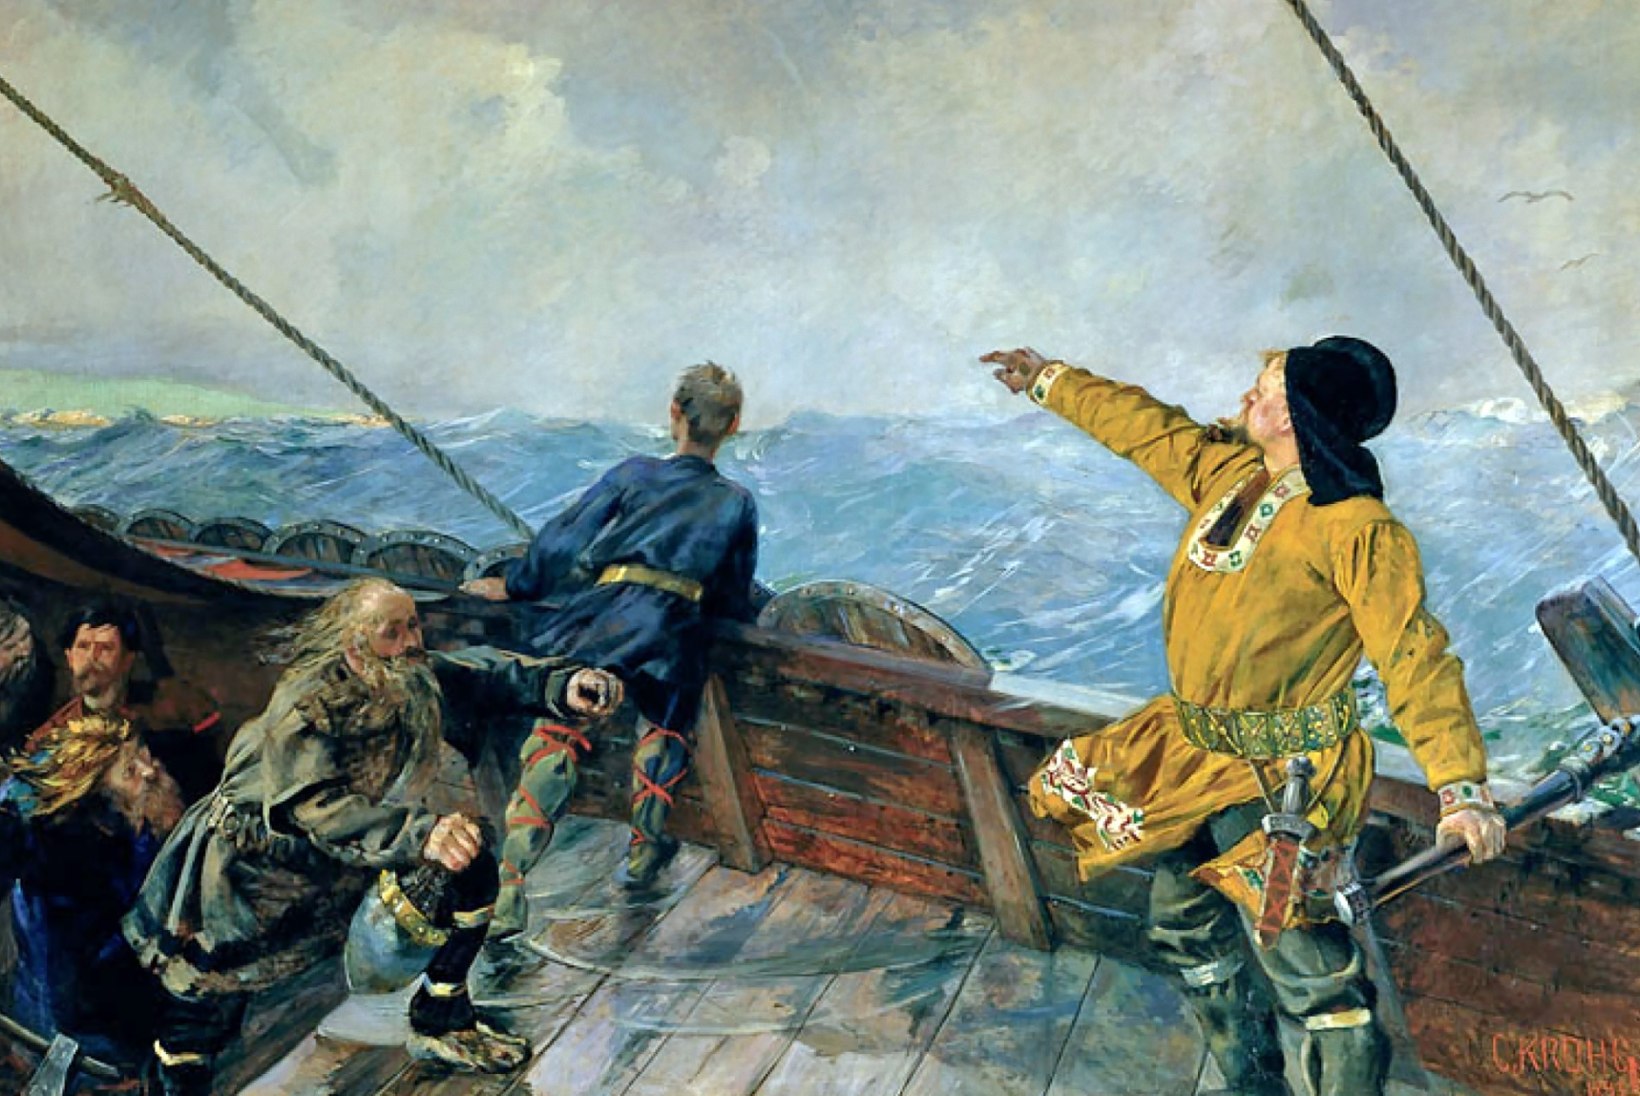 MINEVIKUHETK | 9. oktoober: viiking Leifr Eiriksson maabus esimese eurooplasena Põhja-Ameerikas